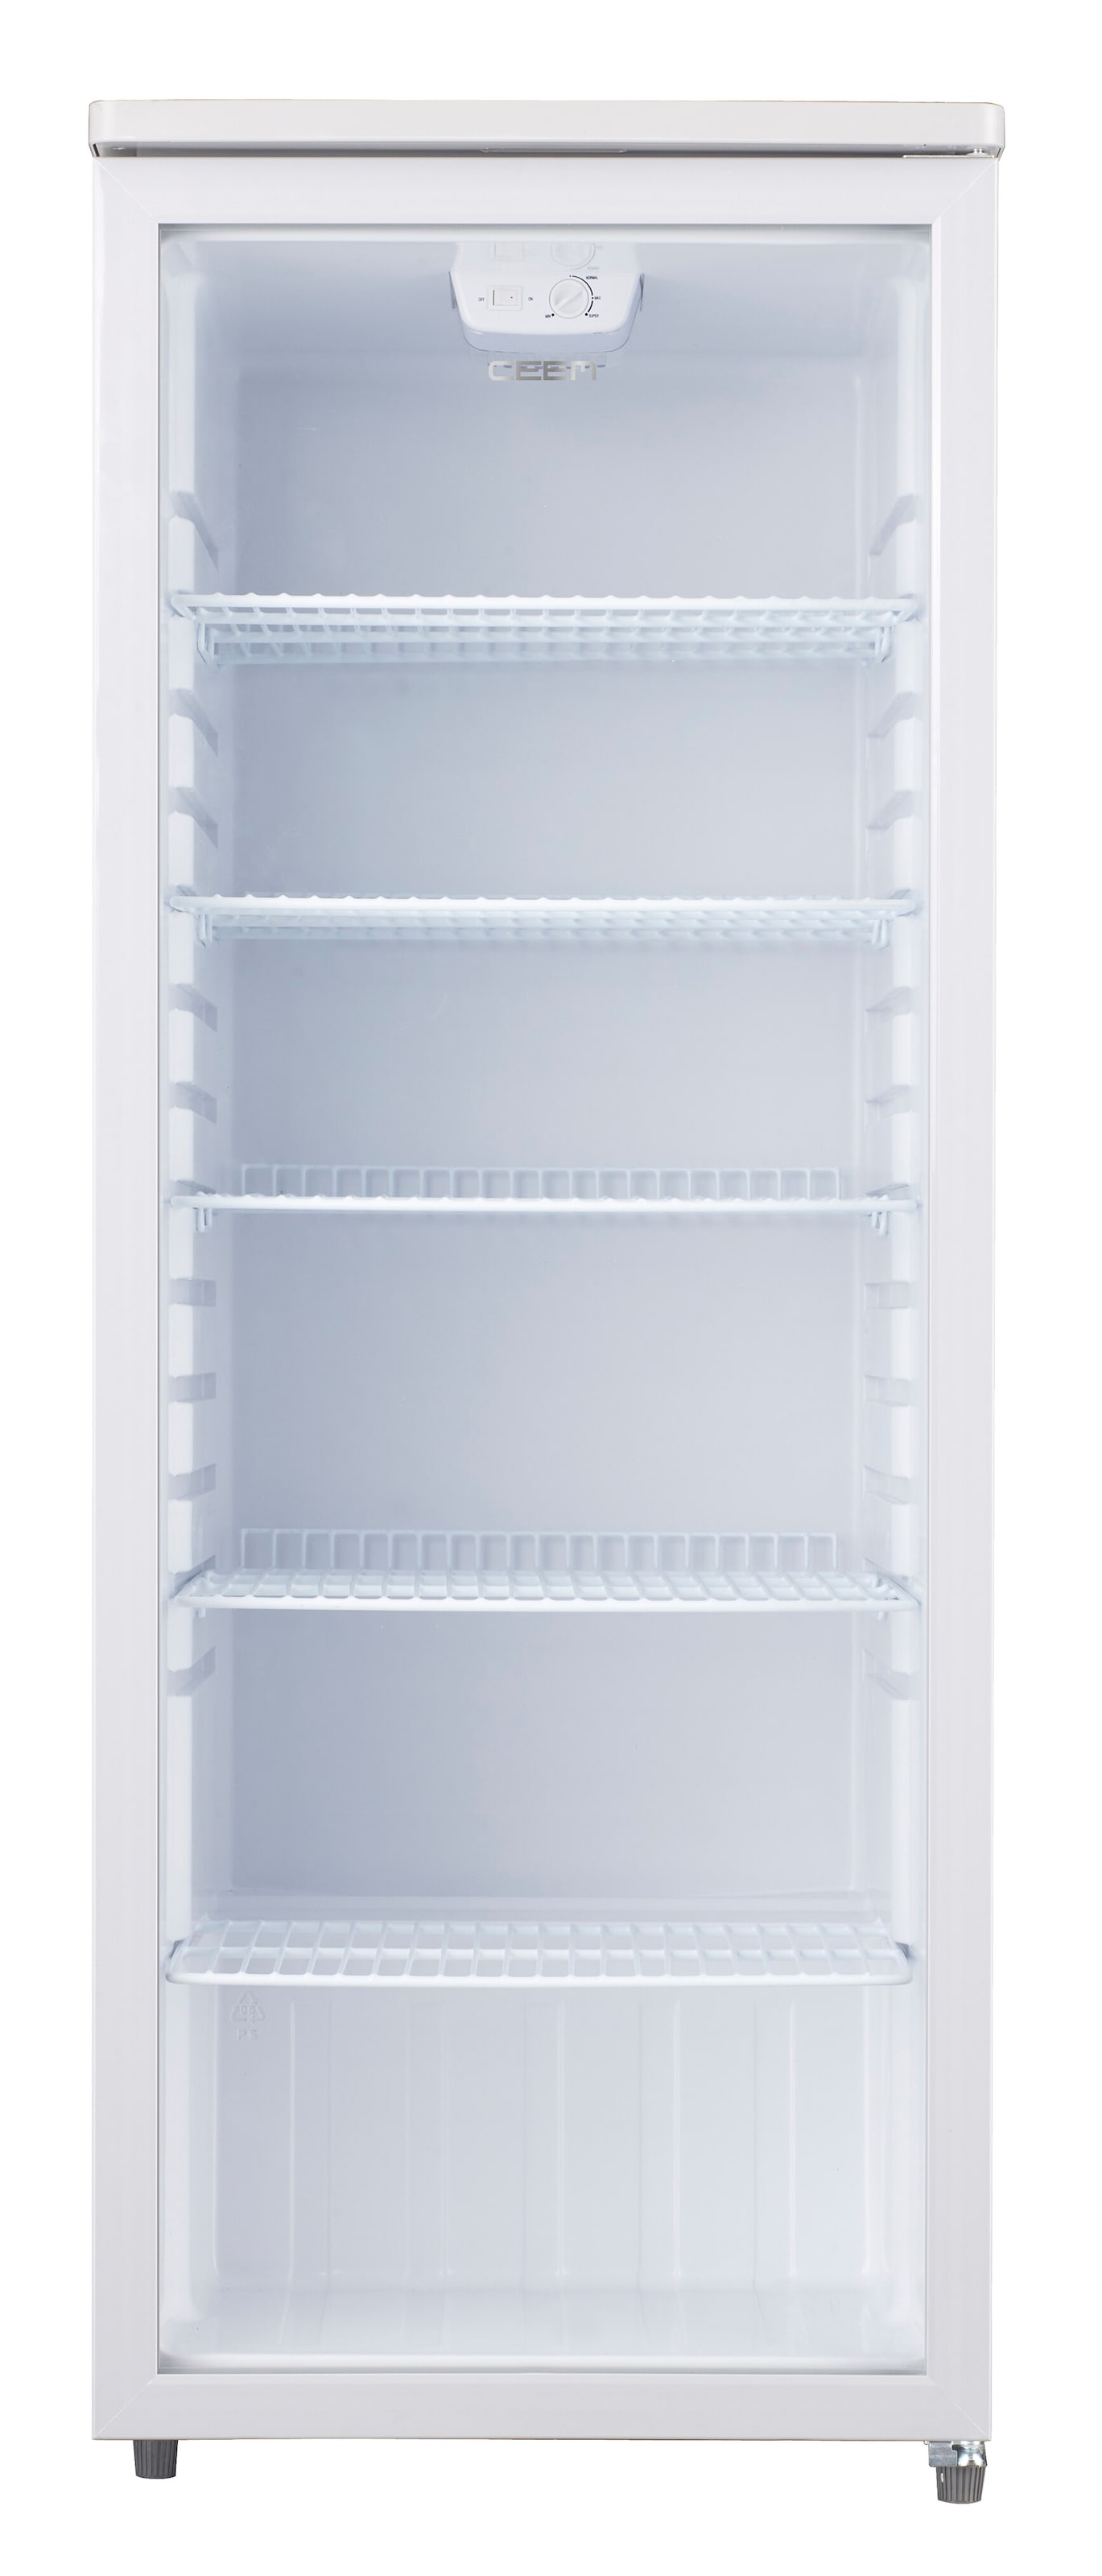 Getränkekühlschrank, BC 256, 143,5 cm hoch, 54,5 cm breit